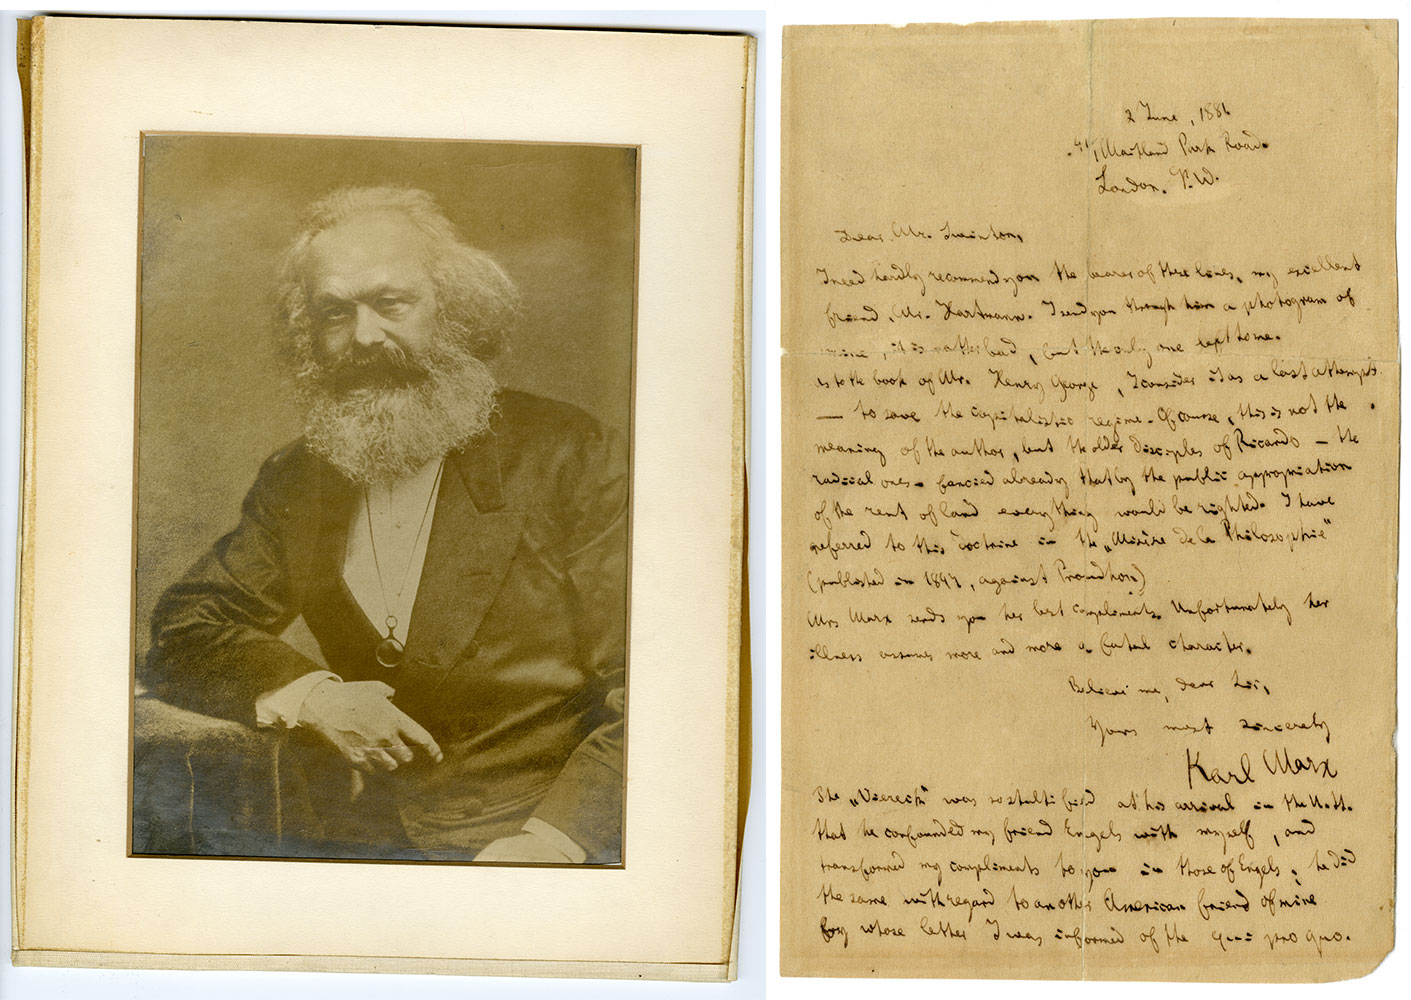 Karl Marx letter